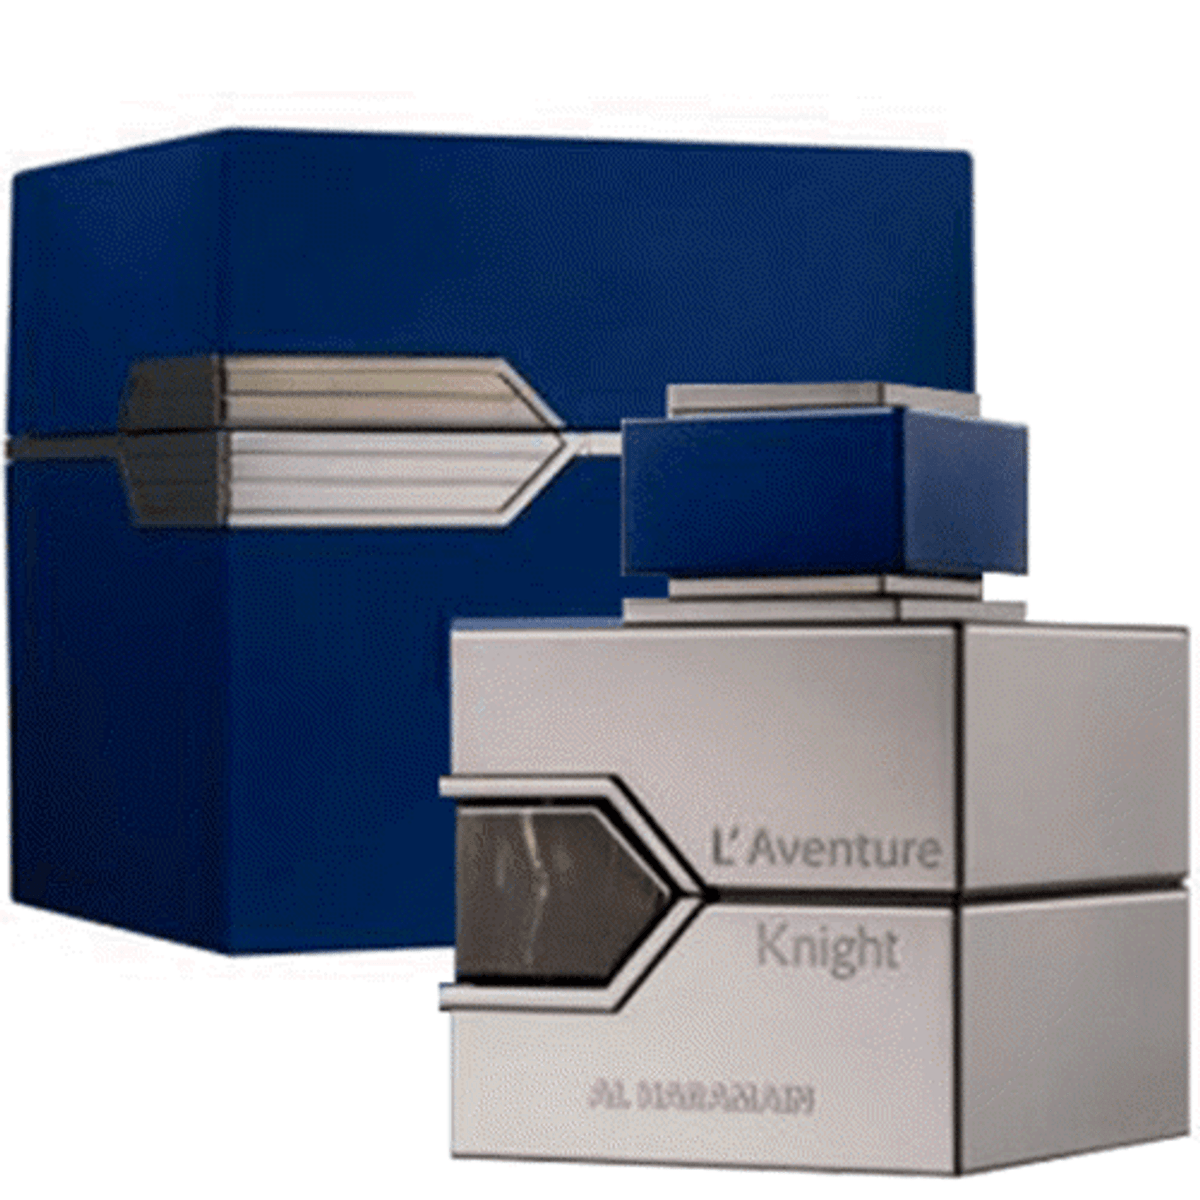 L'Aventure Knight Al Haramain Perfumes for Men - EDP - 100ml